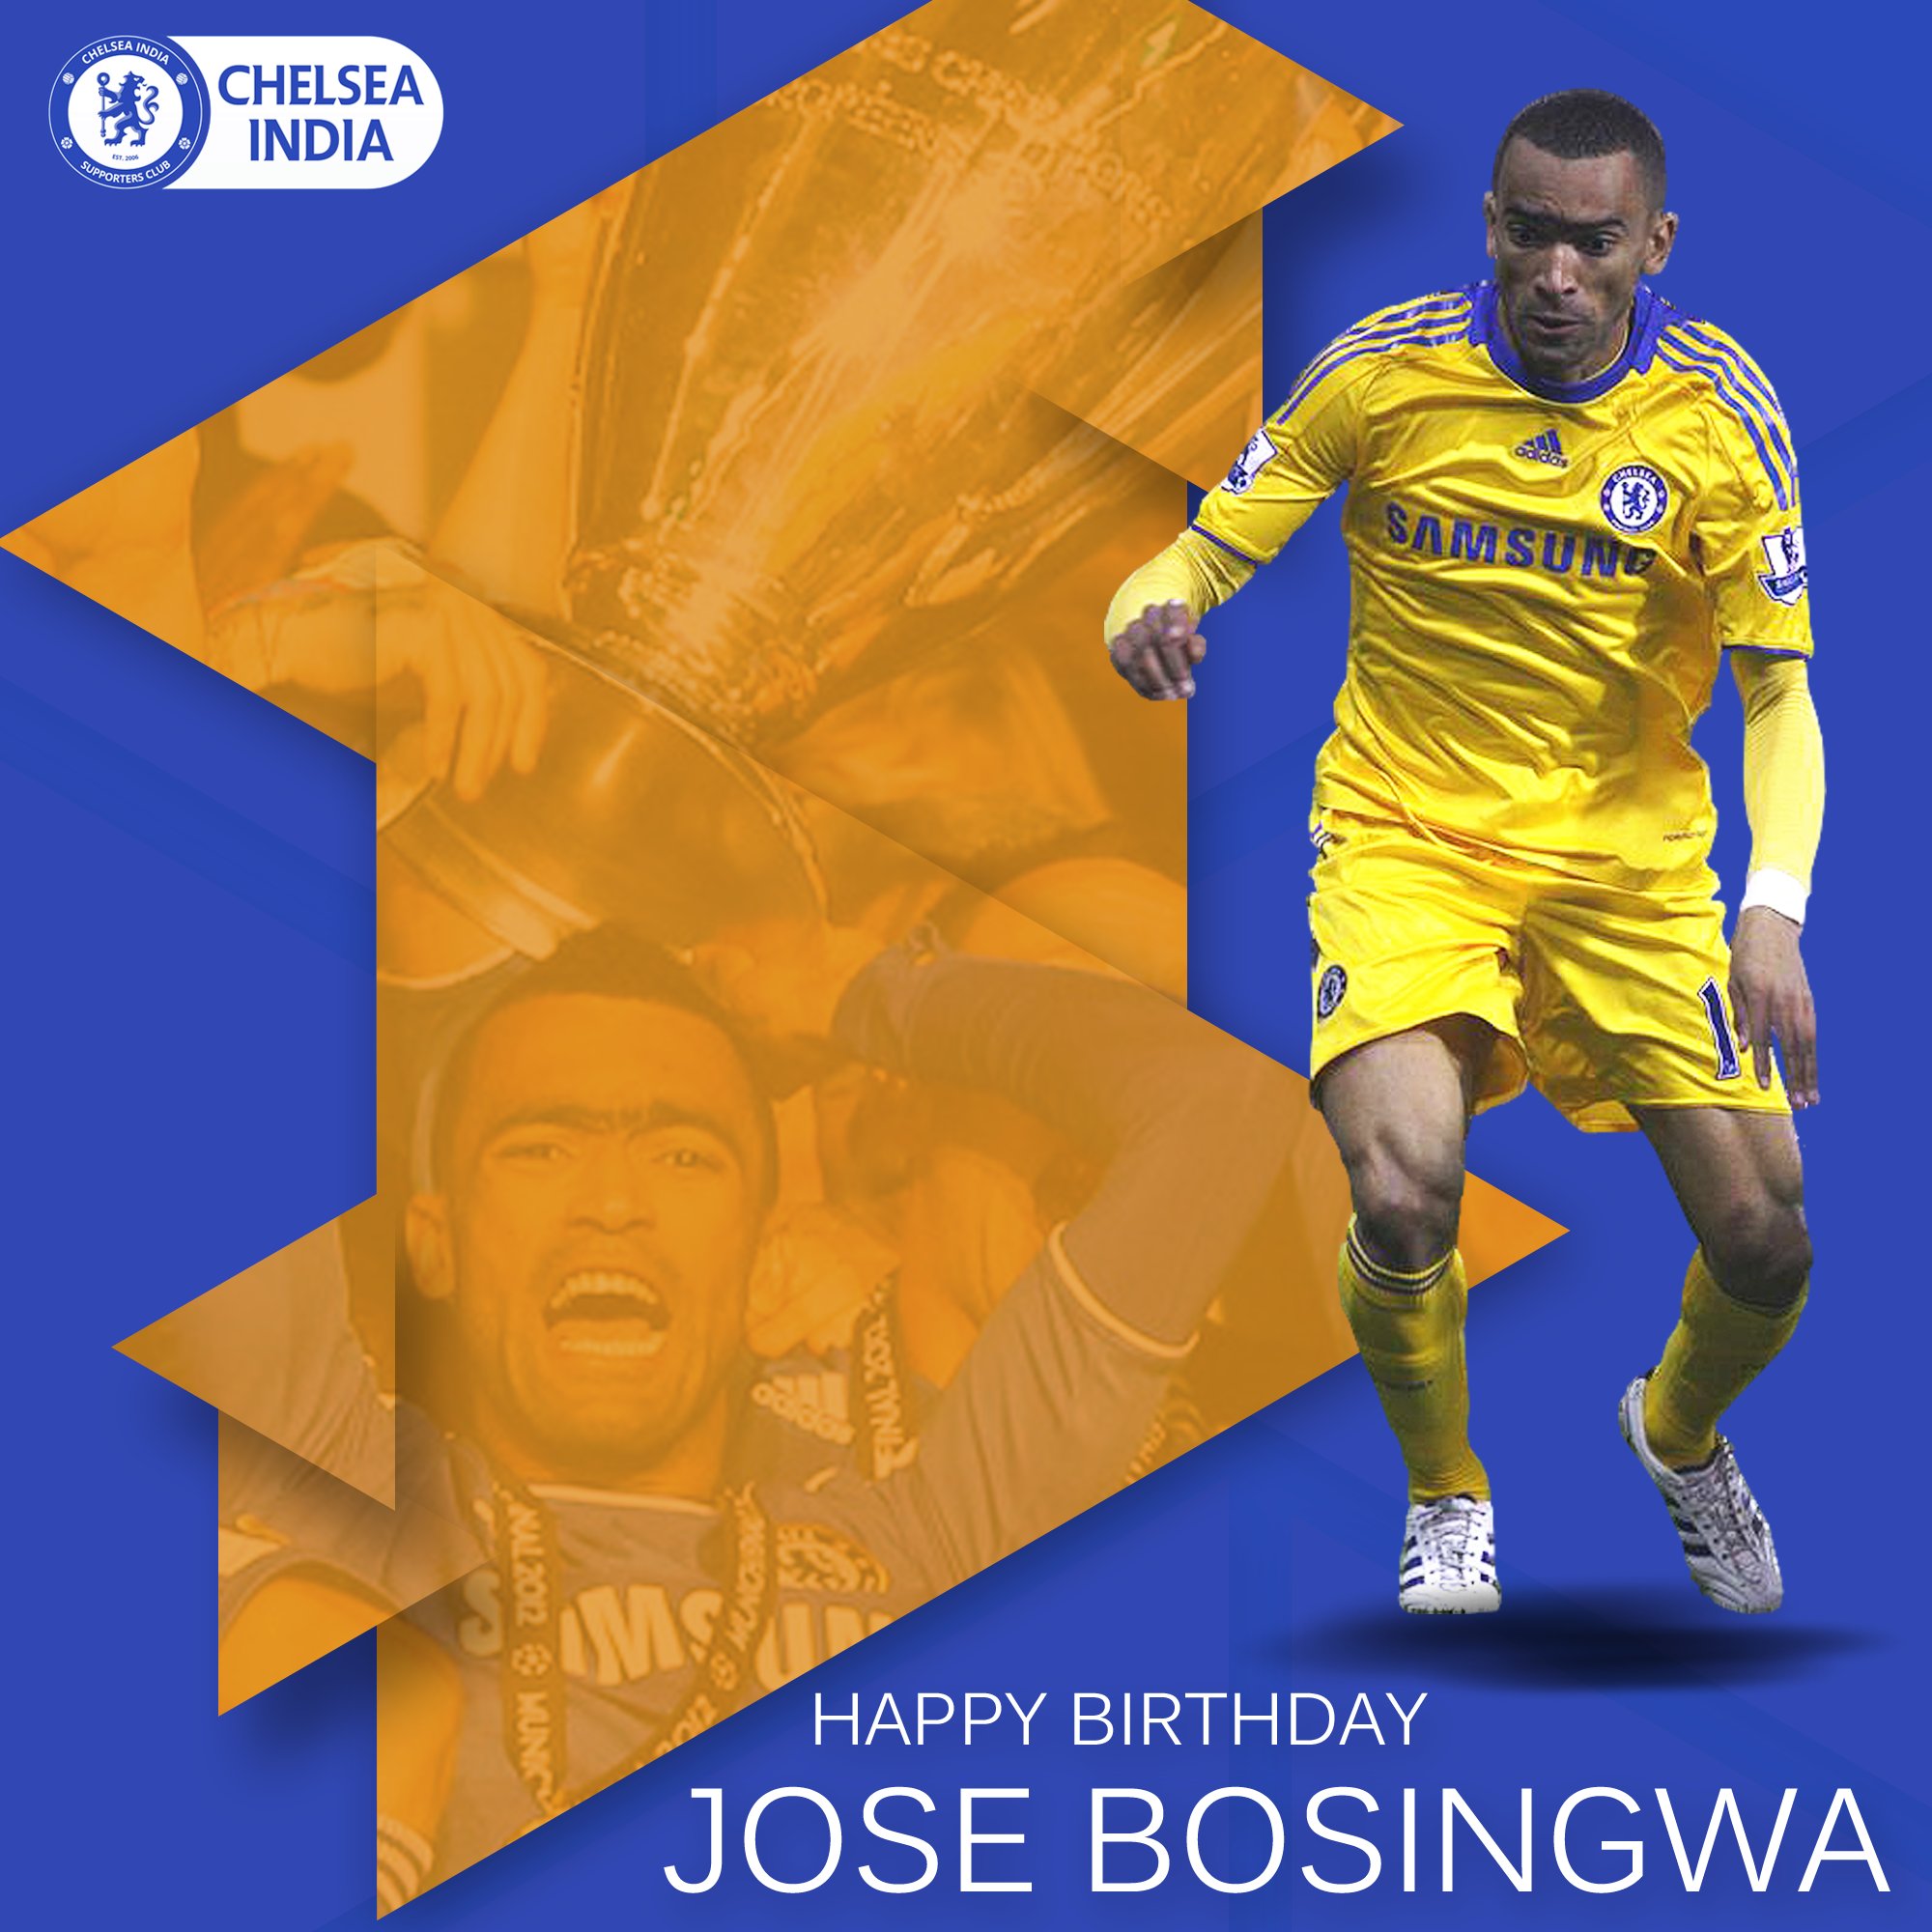 Happy Birthday to former Blue & winner Jose bosingwa, who turns 38  